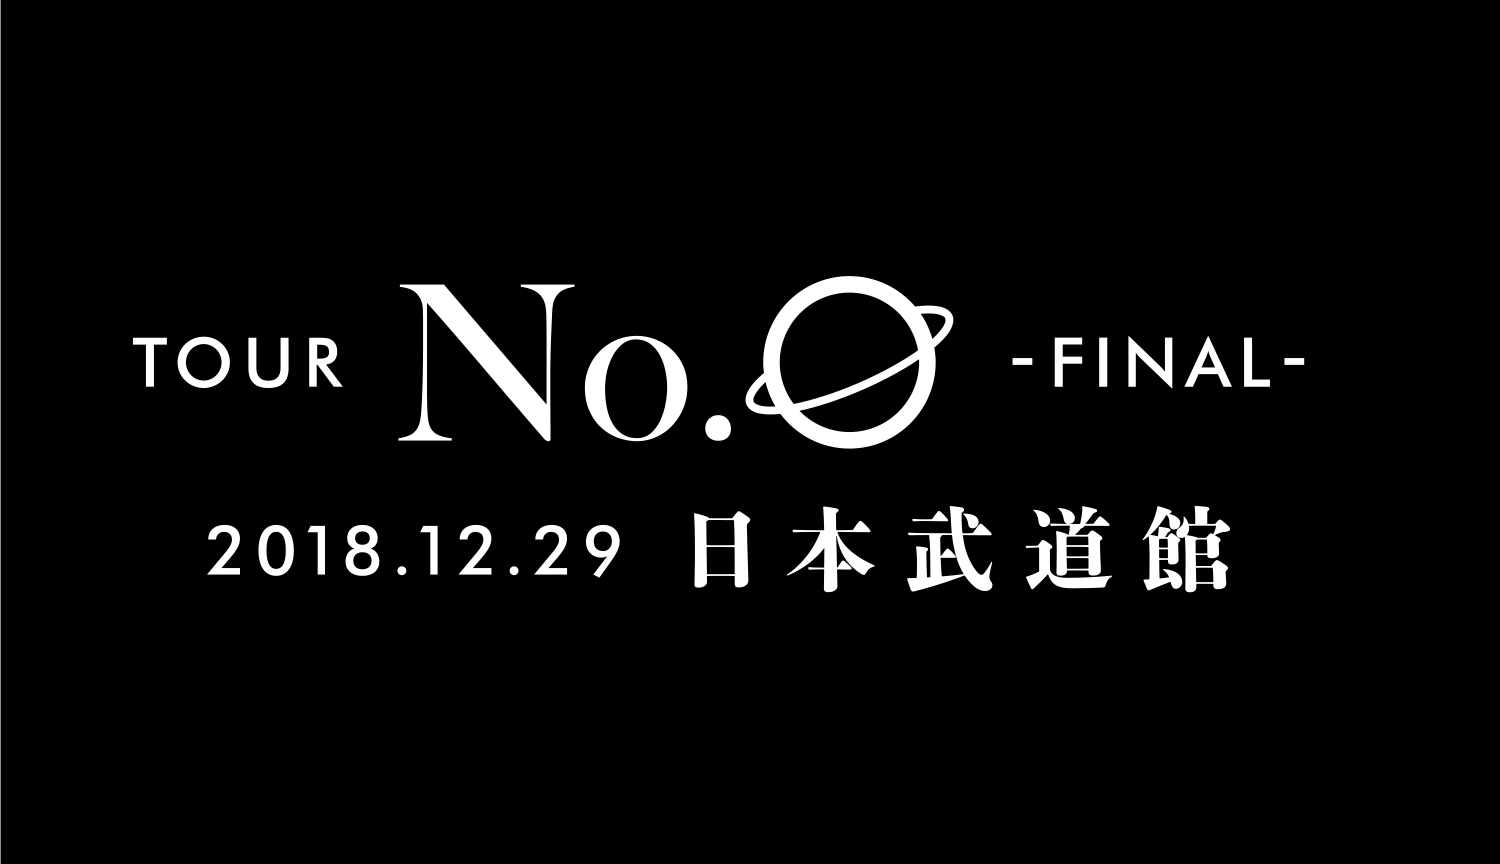 「TOUR No.0 -FINAL-」SPECIAL SITE 